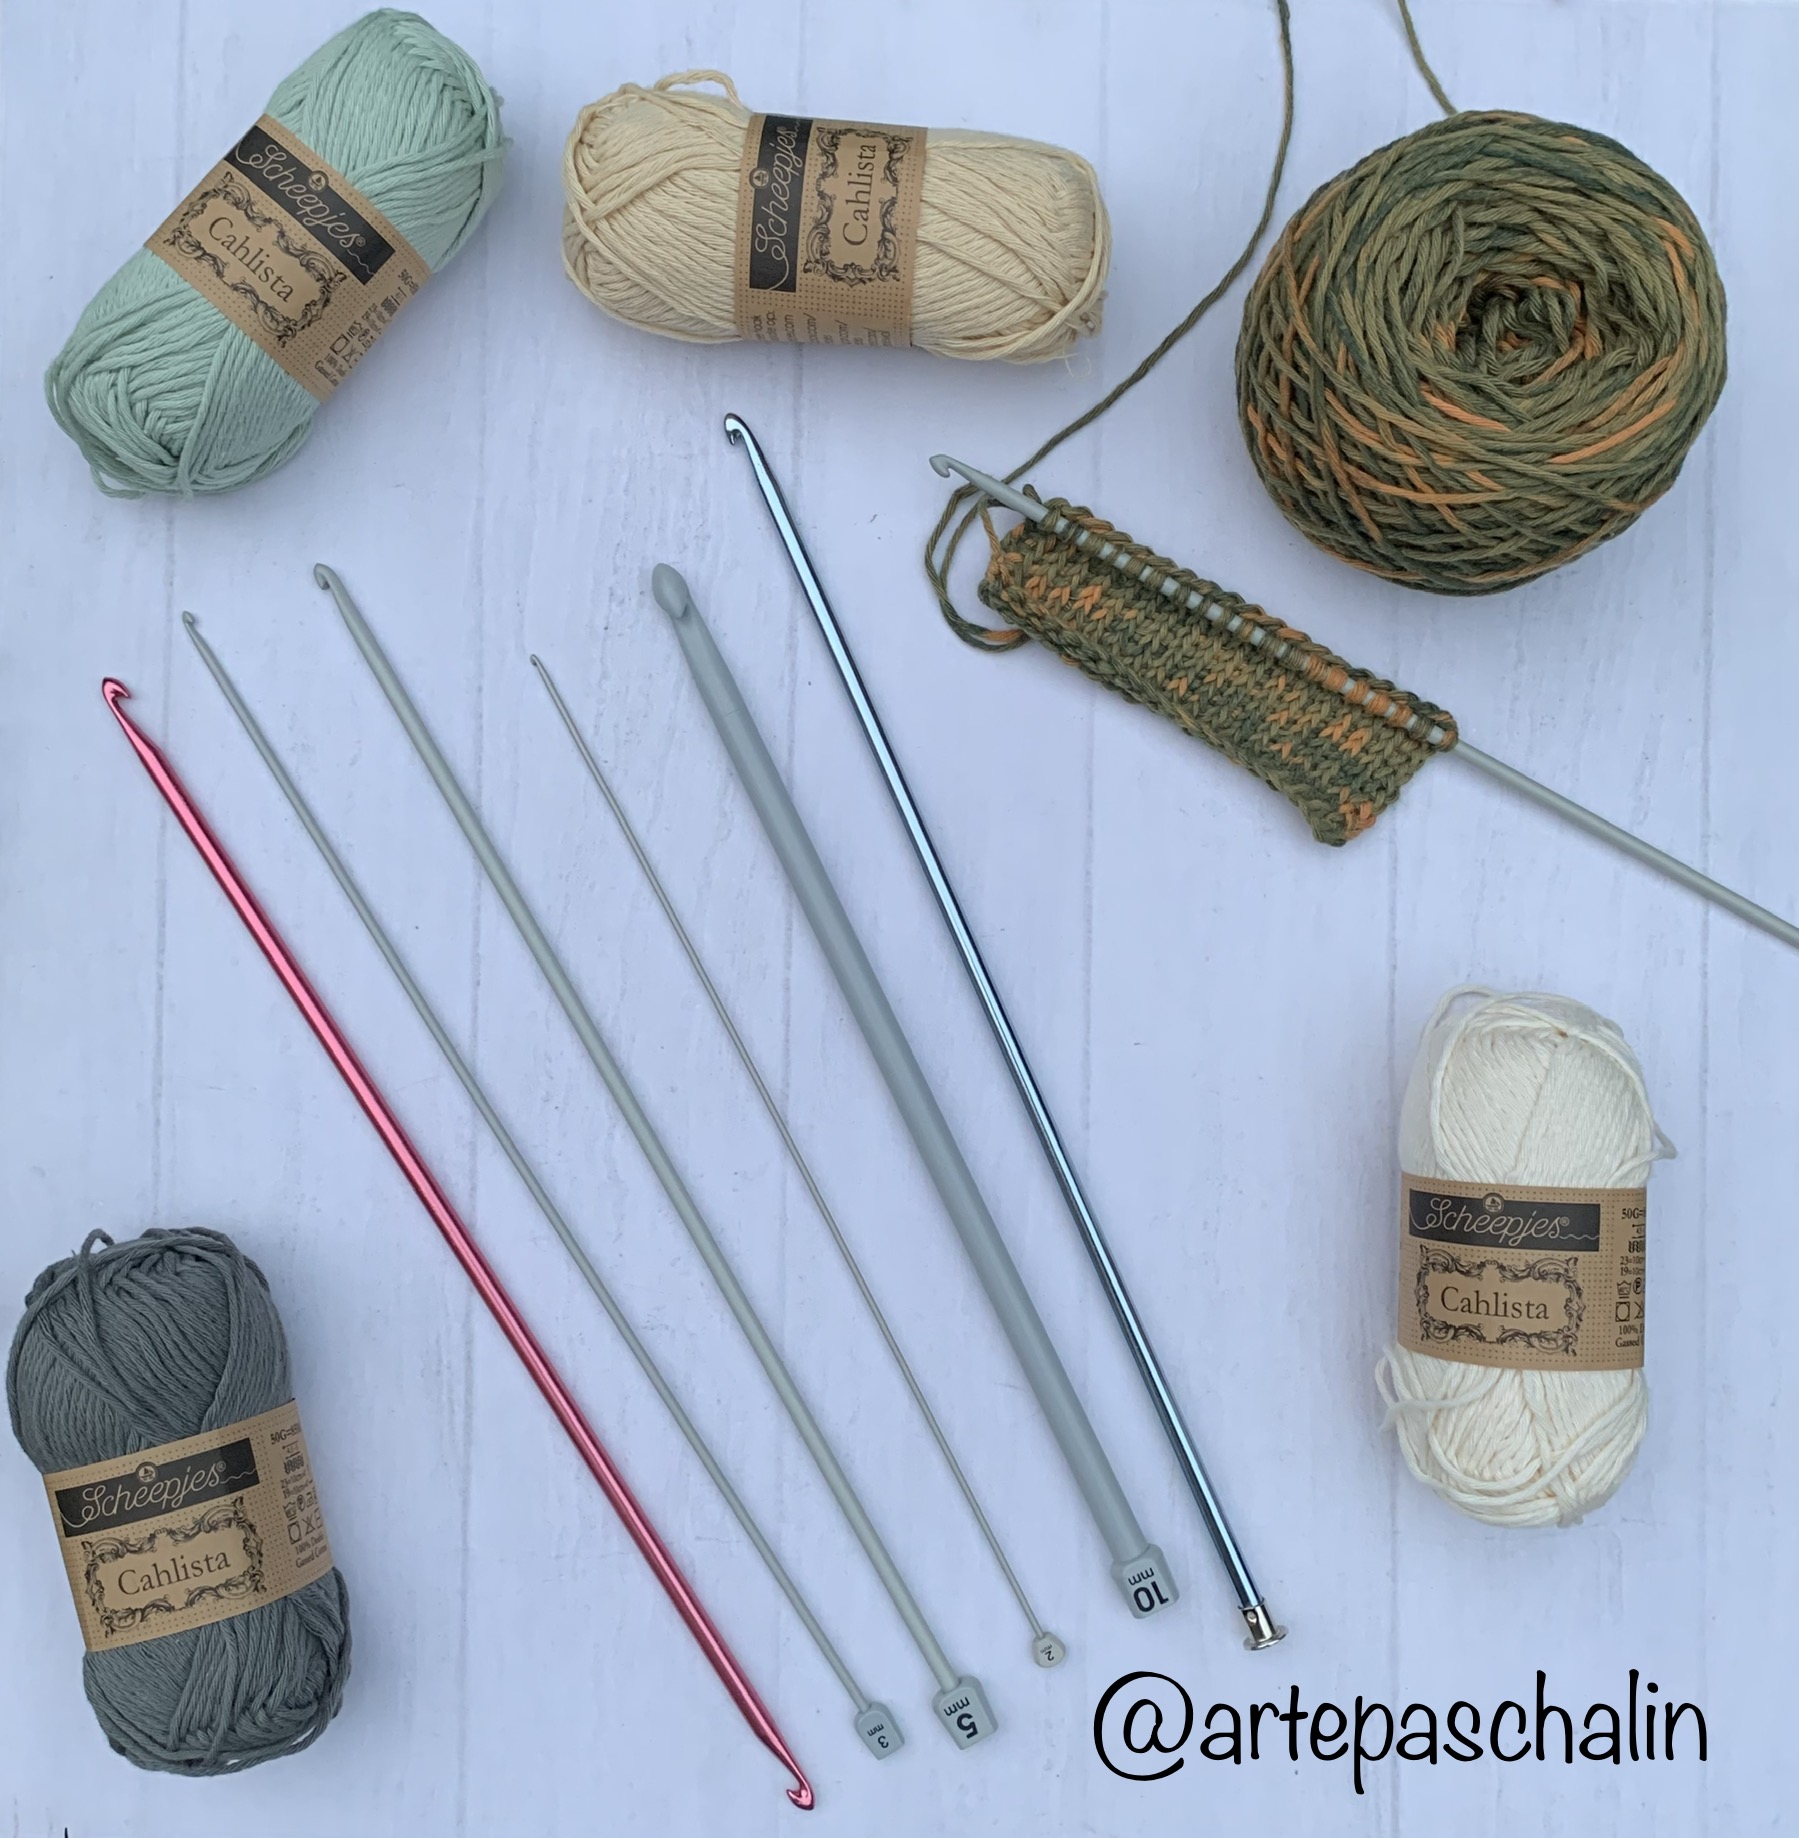 Aprendemos Uno de Mis Puntos PREFERIDOS el Punto Tunecino Cordón de Crochet  Tunecino 